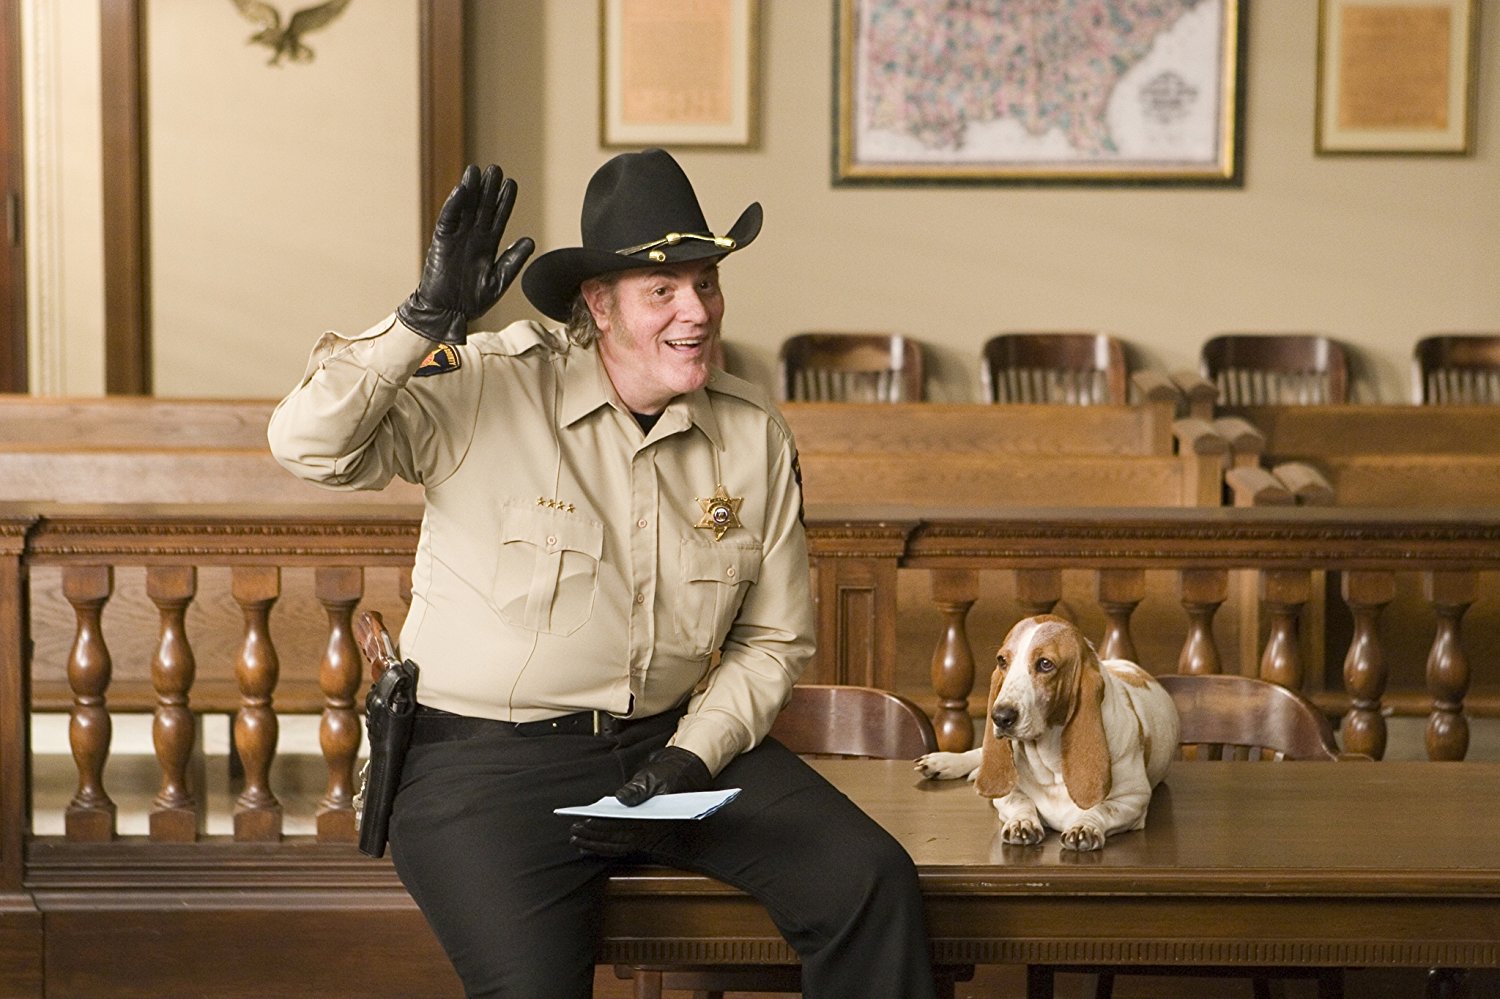 Sheriff Rosco P. Coltrane